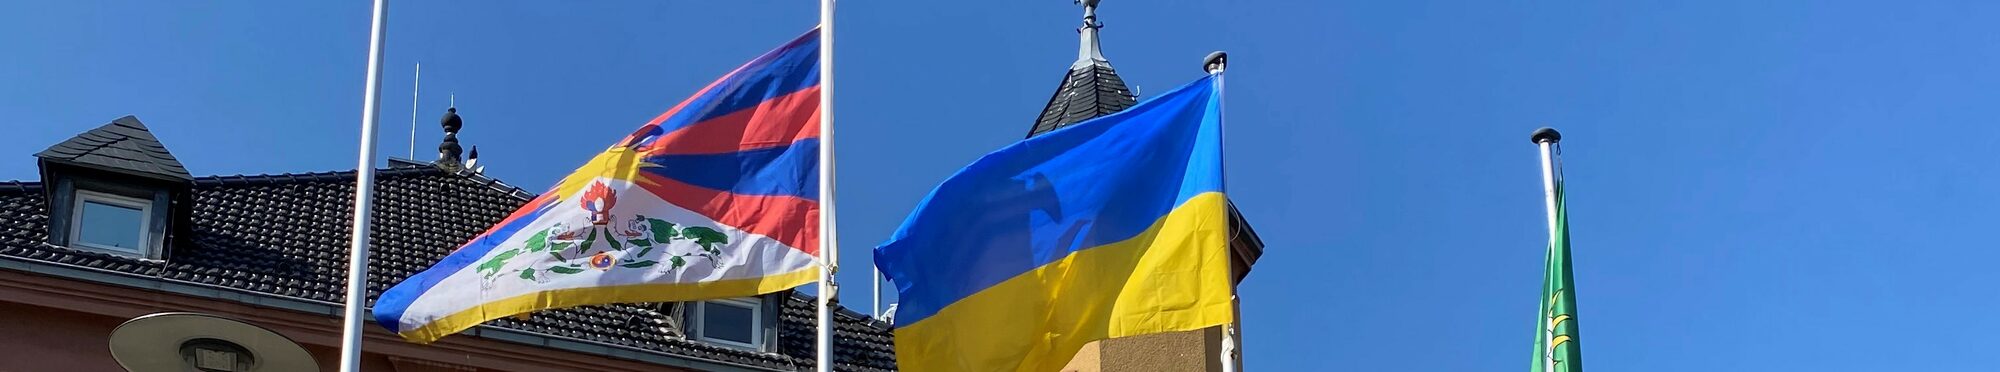 Das Rathaus Vettweiß mit den Flaggen der Ukraine und Tibets